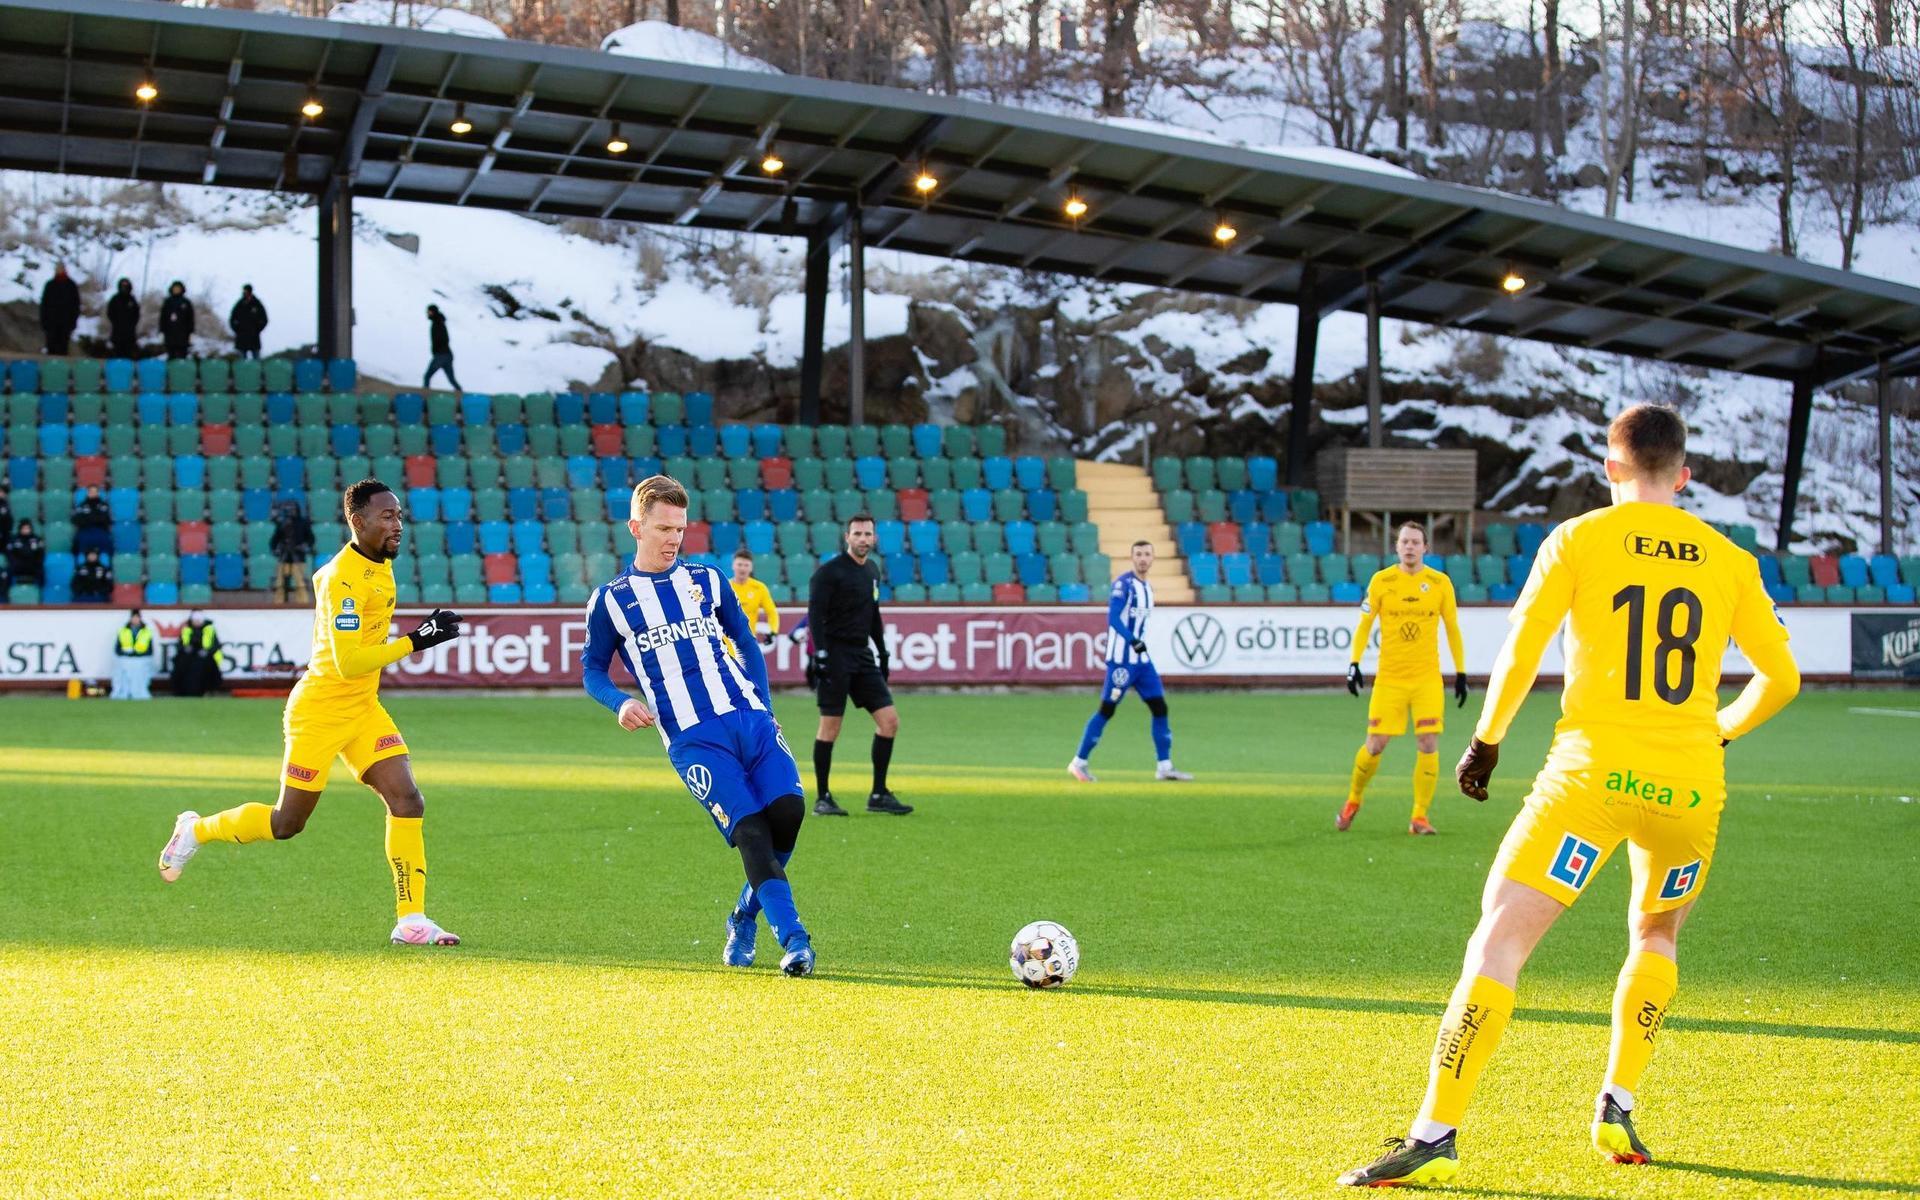 210205 IFK Göteborgs Pontus Wernbloom under fotbollsmatchen i träningsmatchen mellan IFK Göteborg och Halmstad den 5 februari 2021 i Göteborg. Foto: Michael Erichsen / BILDBYRÅN / COP 89 / MI0084